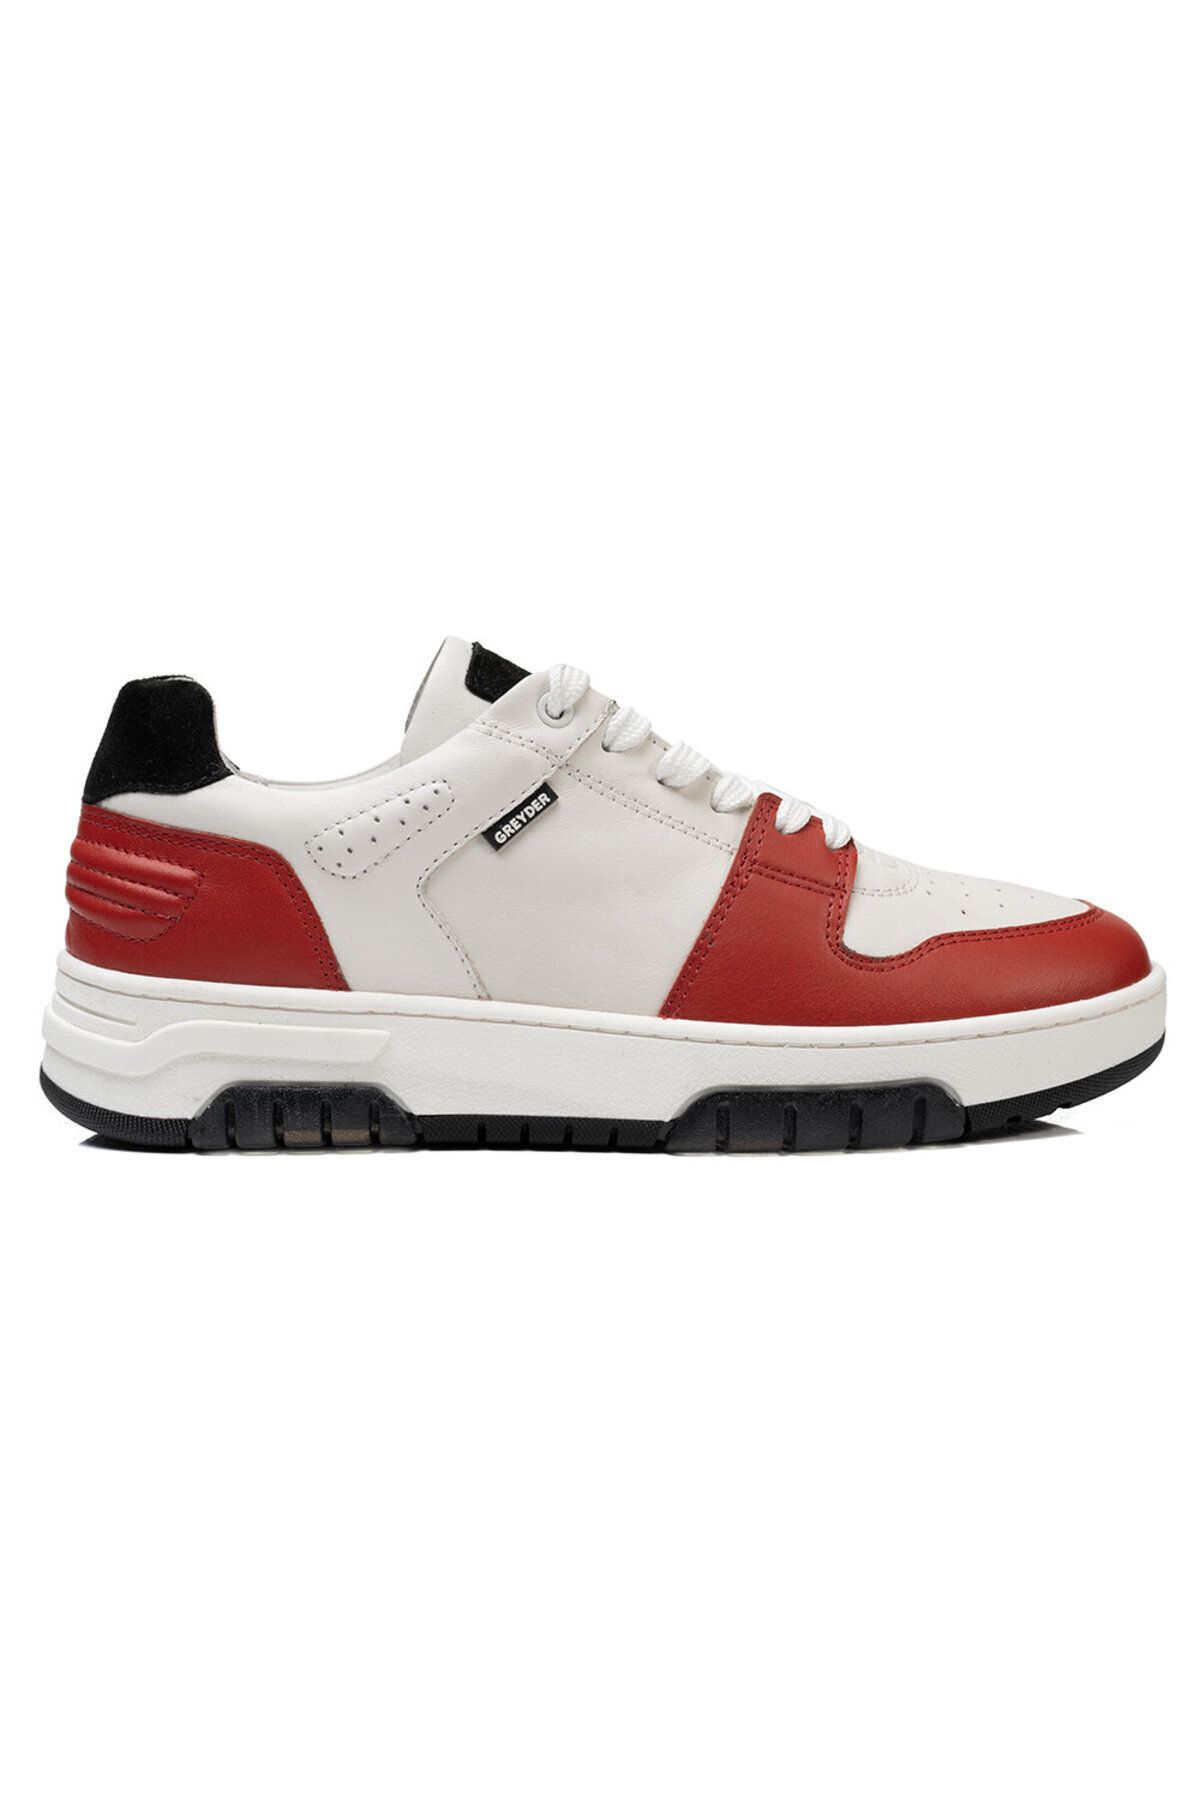 Greyder Kadın Beyaz Kırmızı Hakiki Deri Sneaker Ayakkabı 3k2sa33021